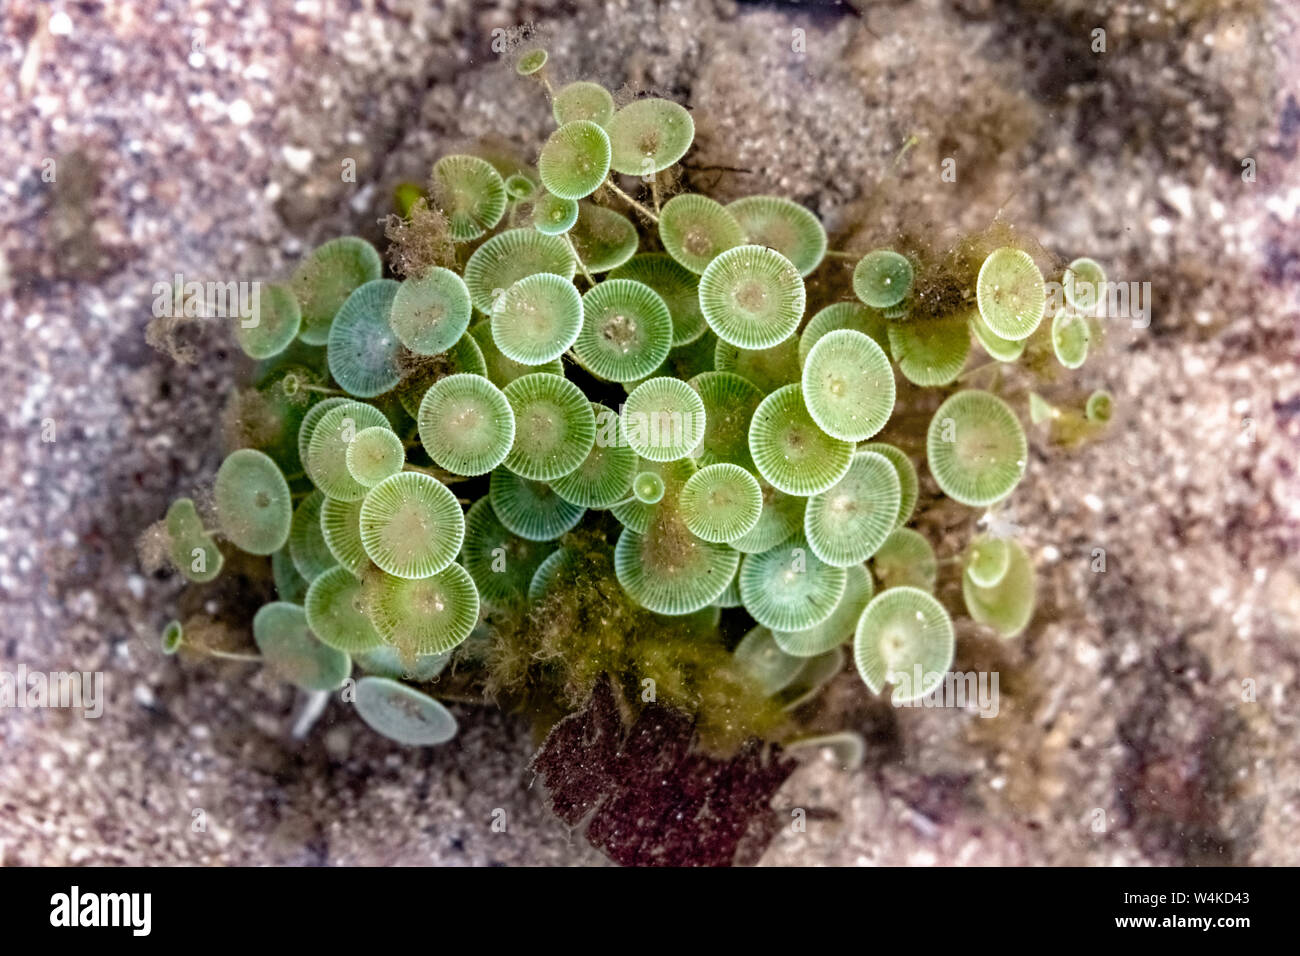 Wissenschaftlicher Name: acetabularia Sp. Auch als wineglass aufgrund ihrer Form Mermaid's bekannt. Eine schöne marine Arten von grünen Algen blühen unter Wasser. Stockfoto